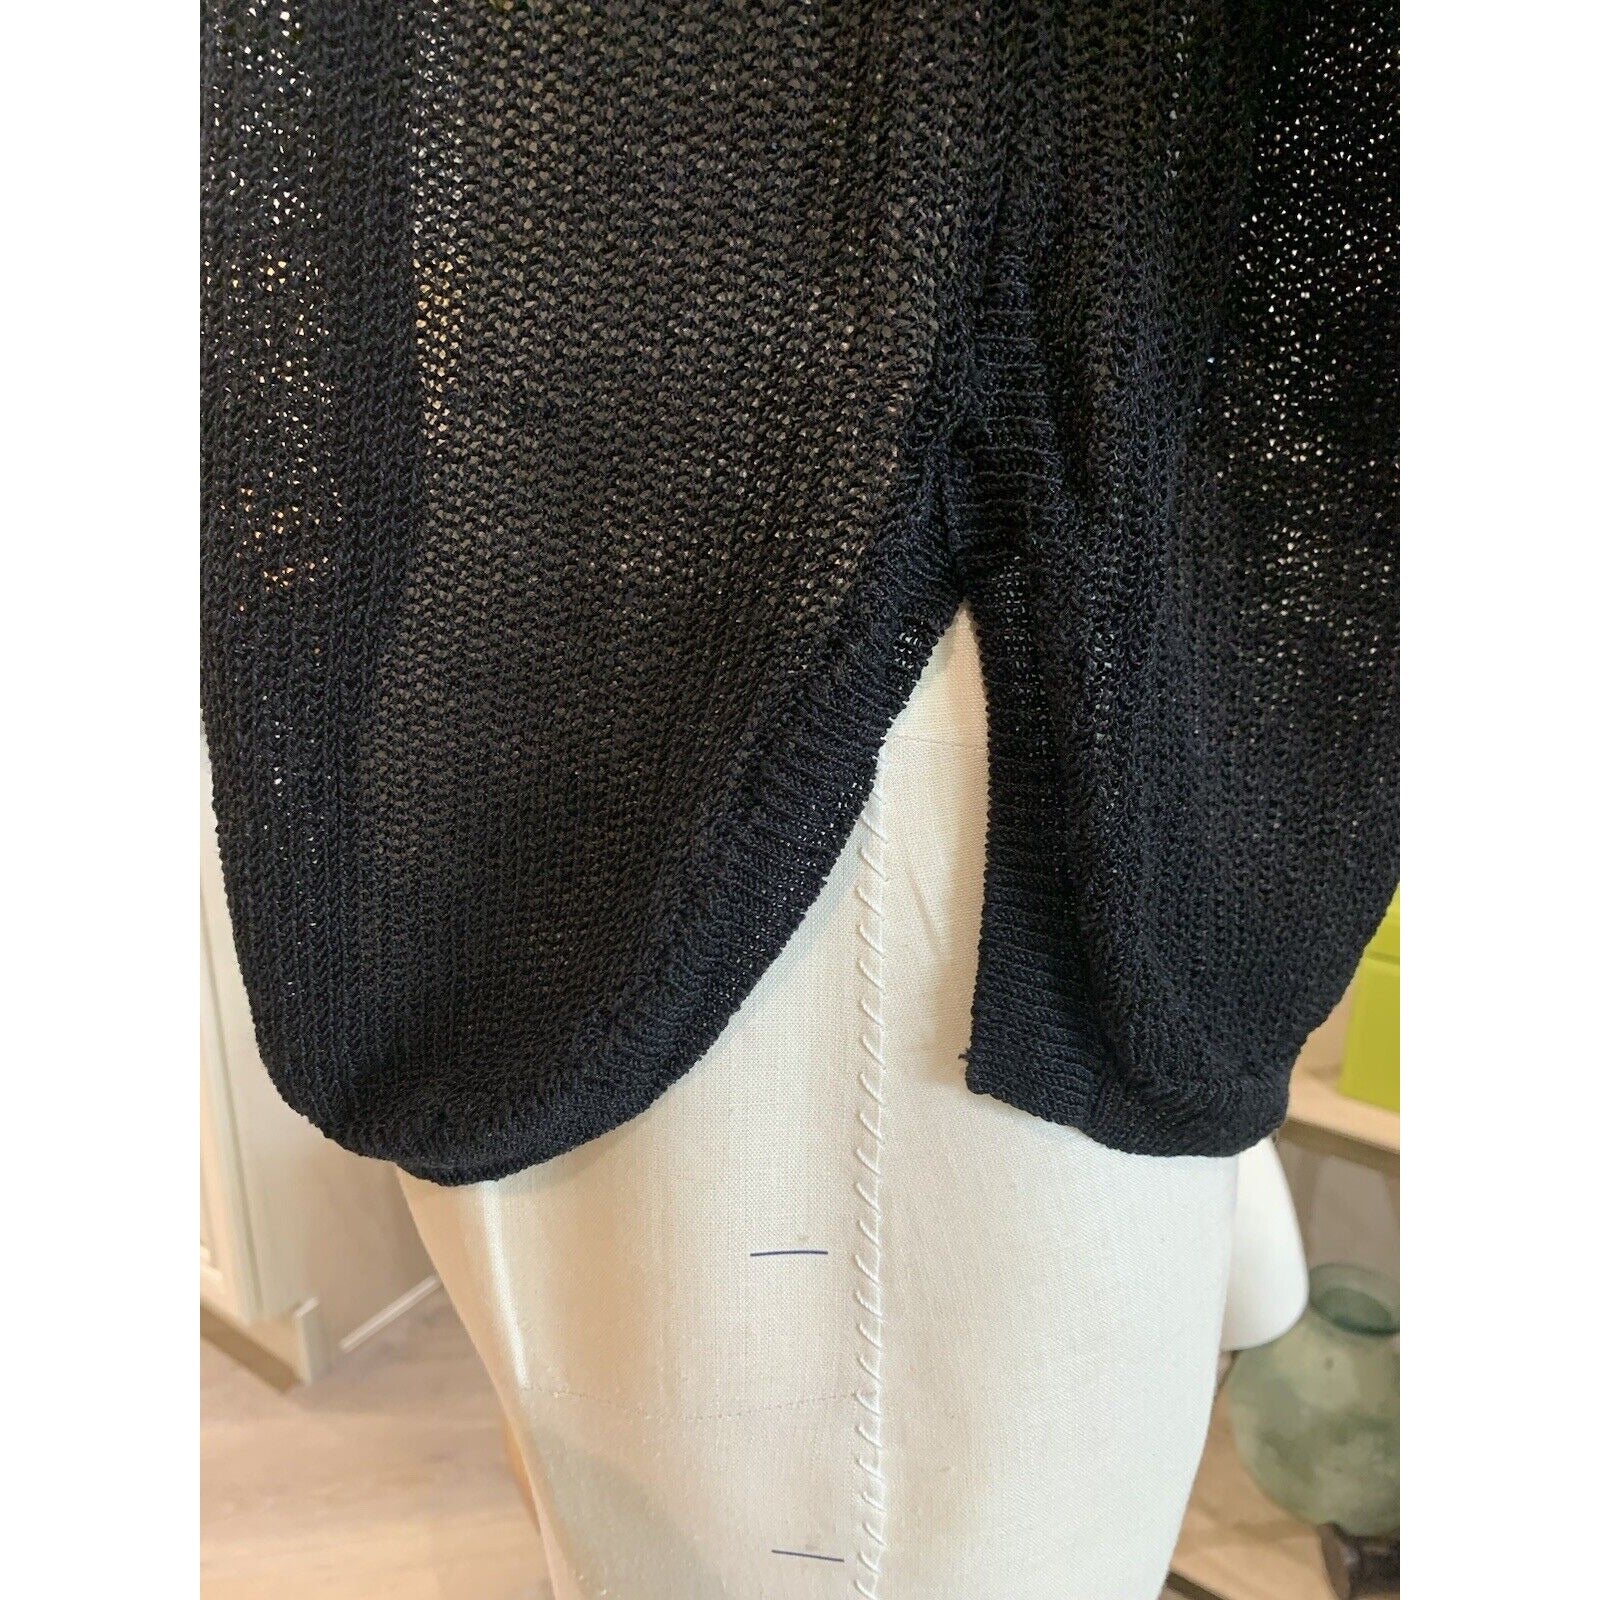 Bottom Of Women's Black Knit Sweater 